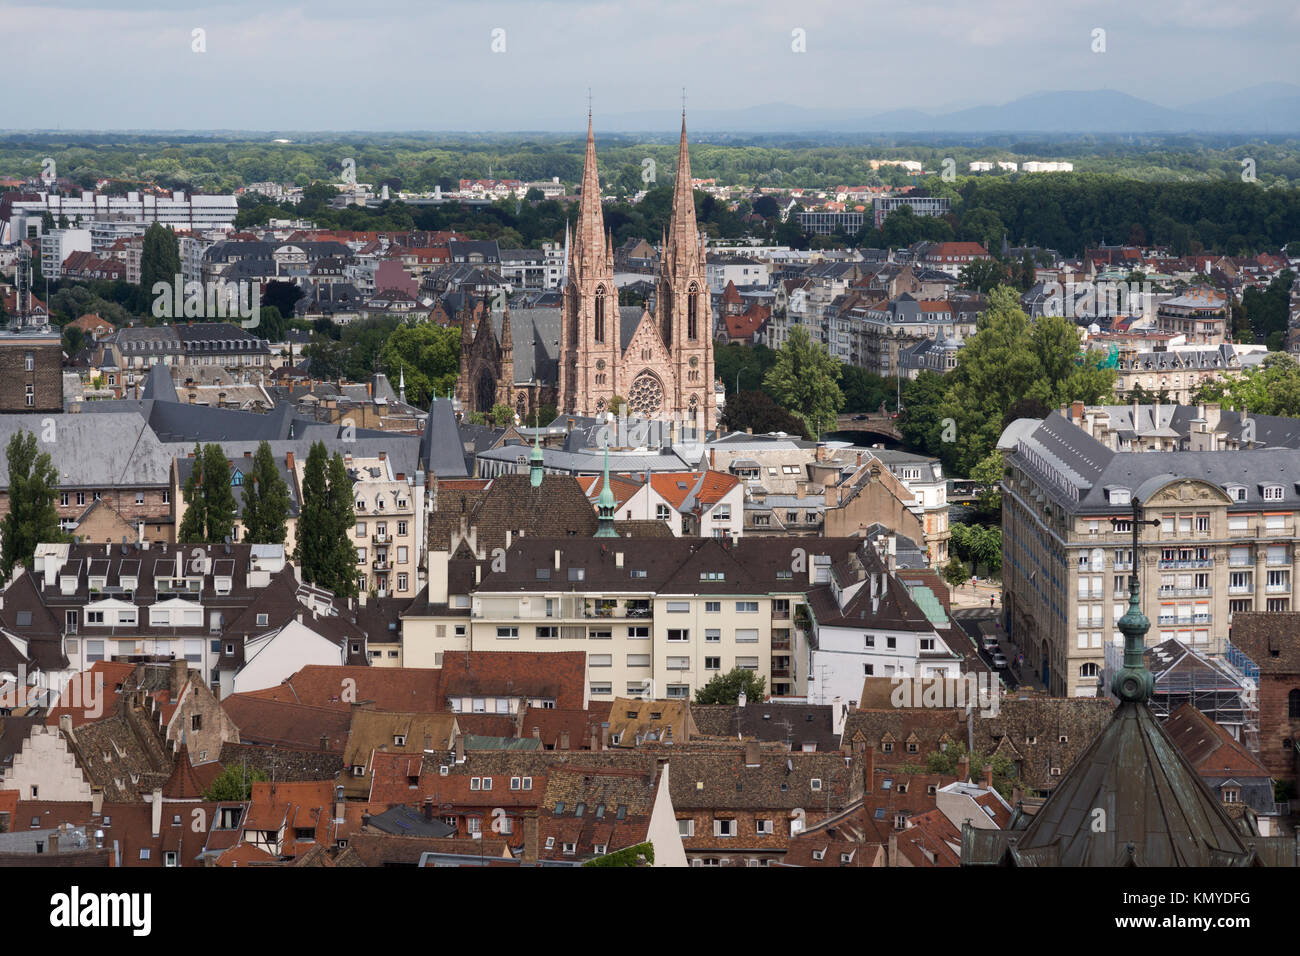 Una vista aérea en Estrasburgo mirando hacia la église réformée Saint-Paul (Iglesia Reformada de San Pablo), como puede verse en la catedral de Estrasburgo Foto de stock